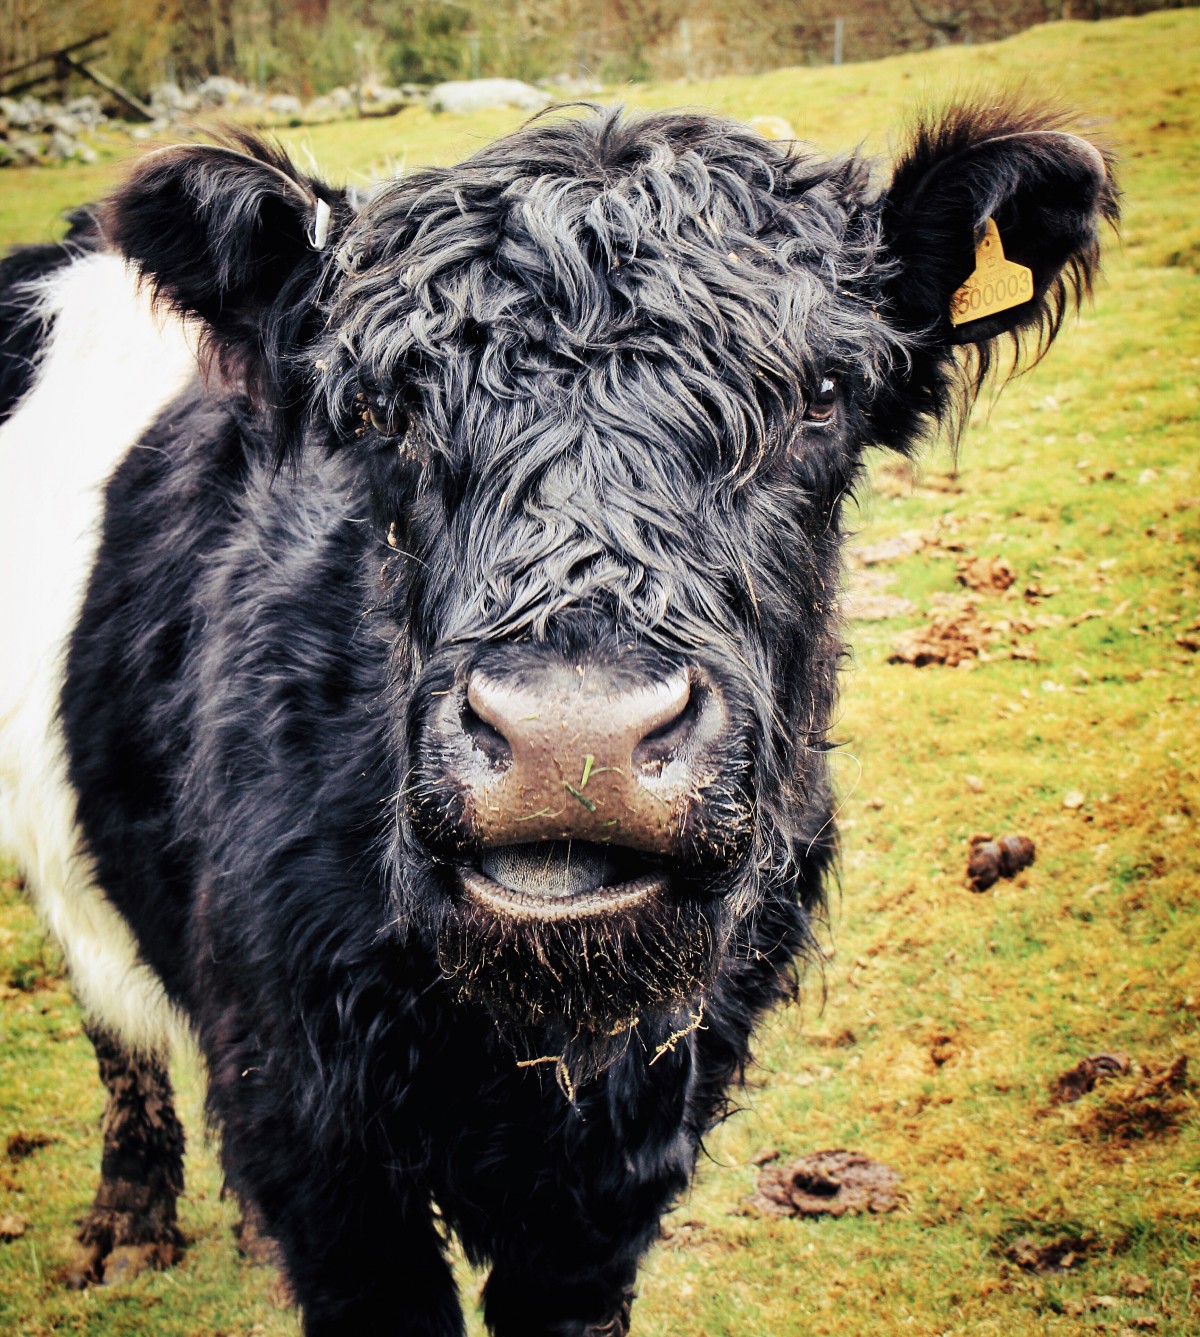 Inquisitive Cow at Borland Farm, Glenshee @kristyashton